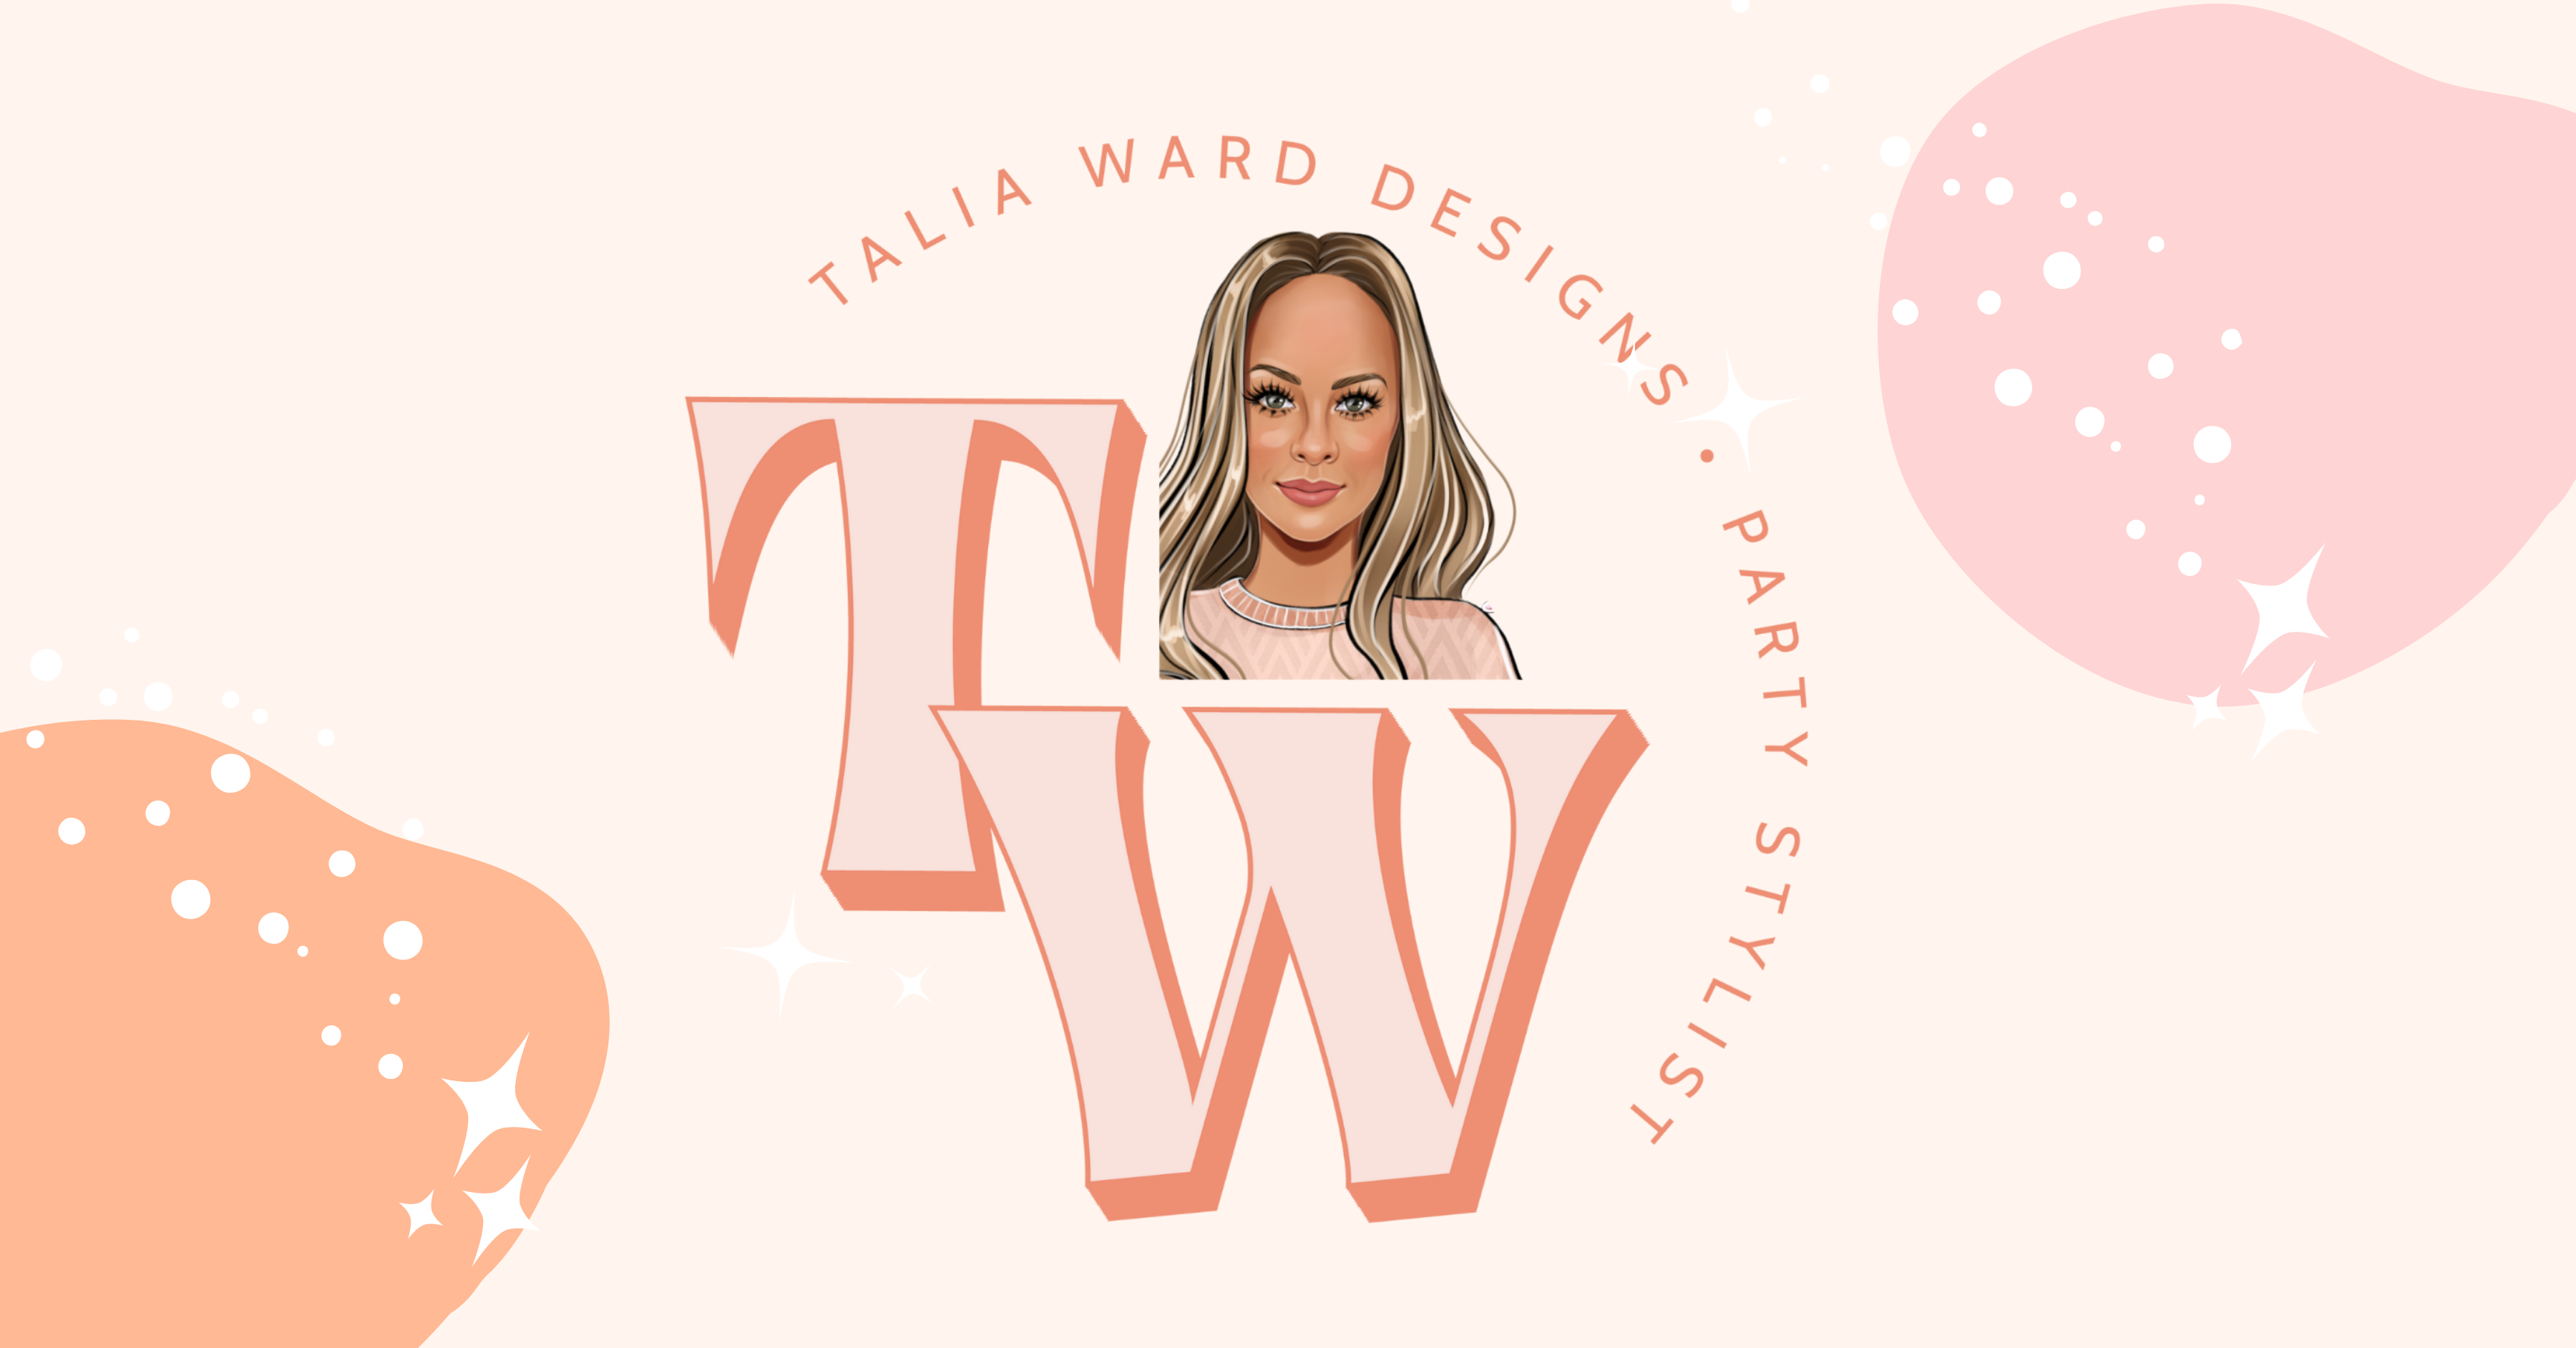 Talia Ward Designs